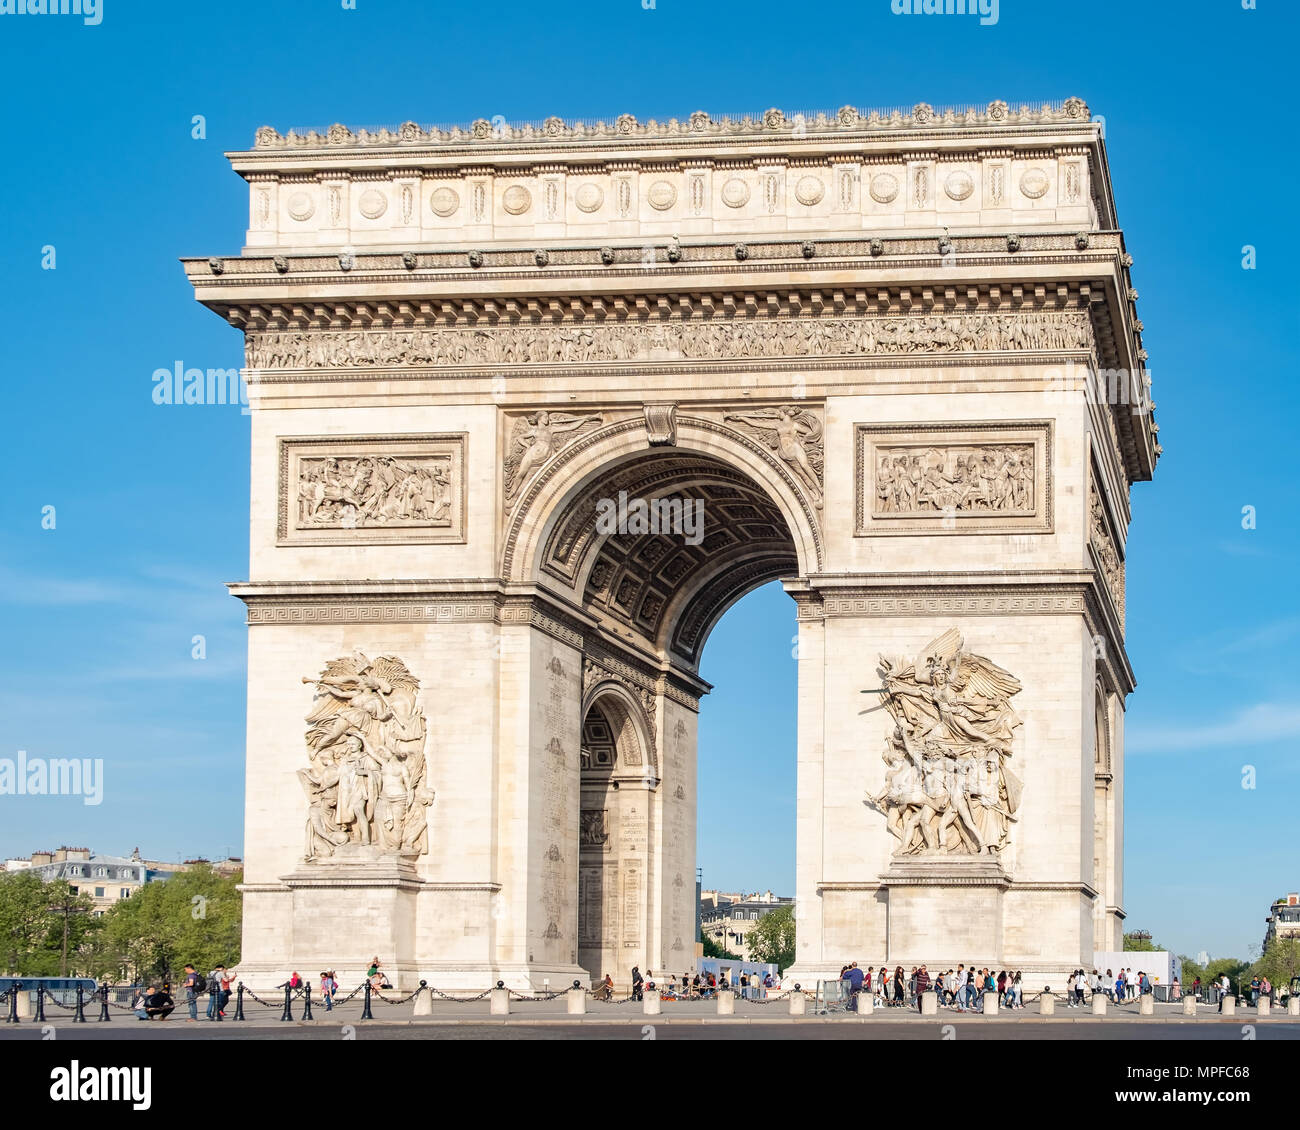 The Arc de Triomphe de l’Etoile is probably the most famous monument in Paris. Stock Photo